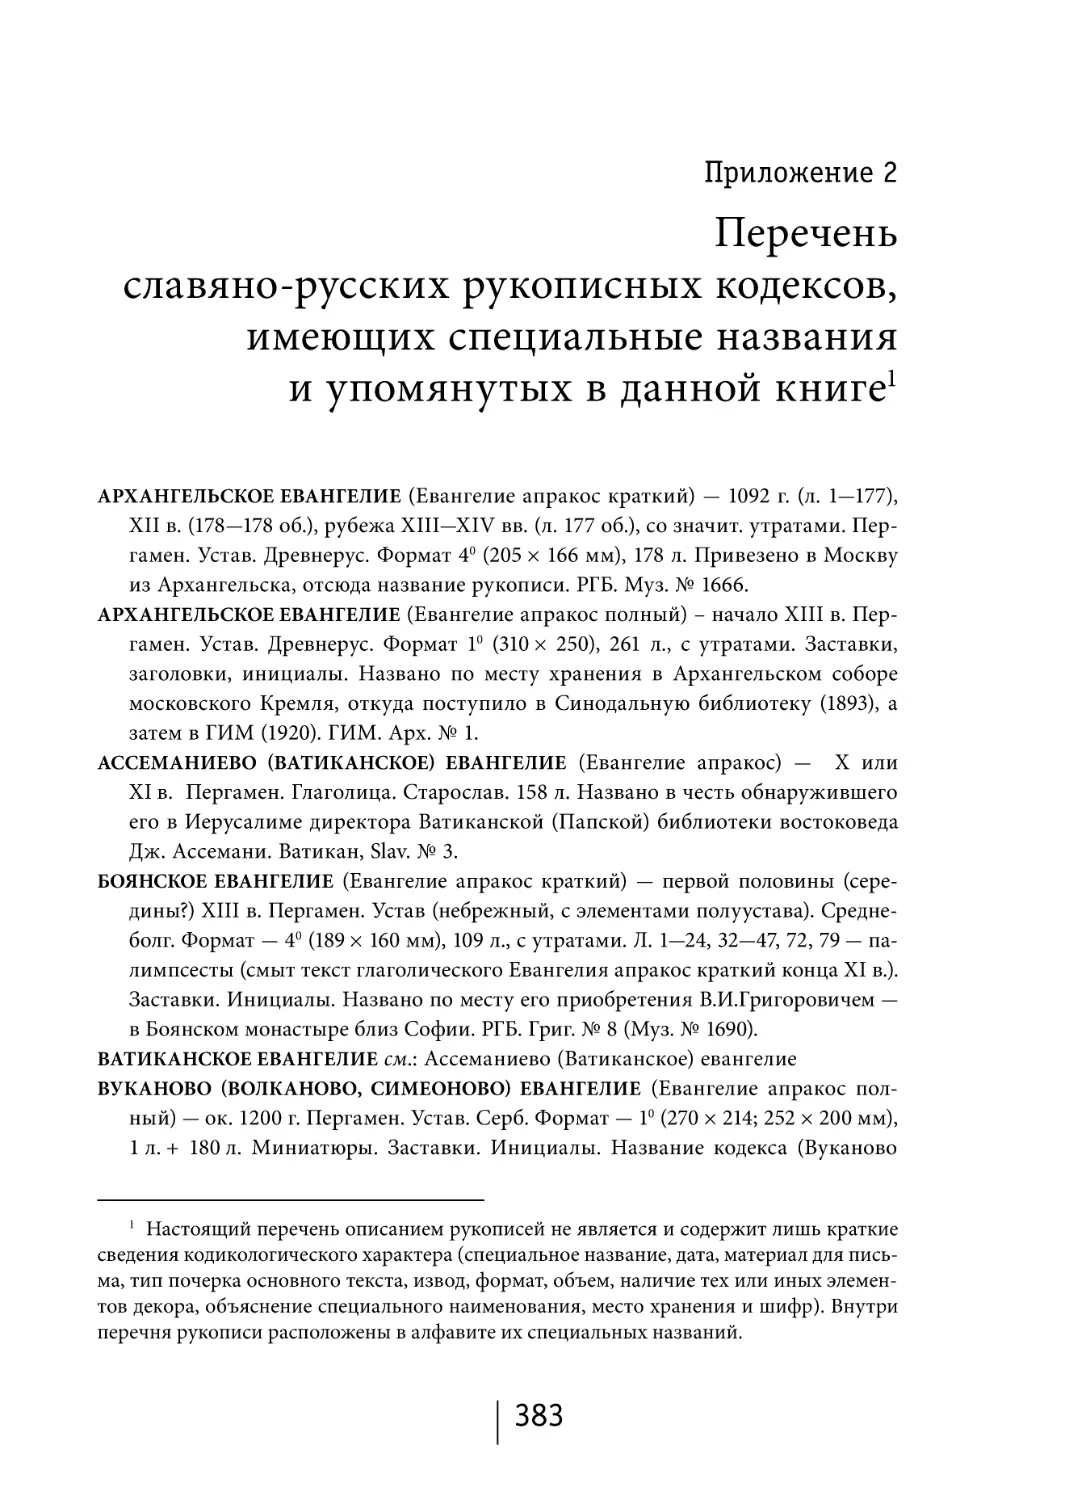 Приложение 2. Перечень славяно-русских рукописных кодексов, имеющих специальные названия и упомянутых в данной книге